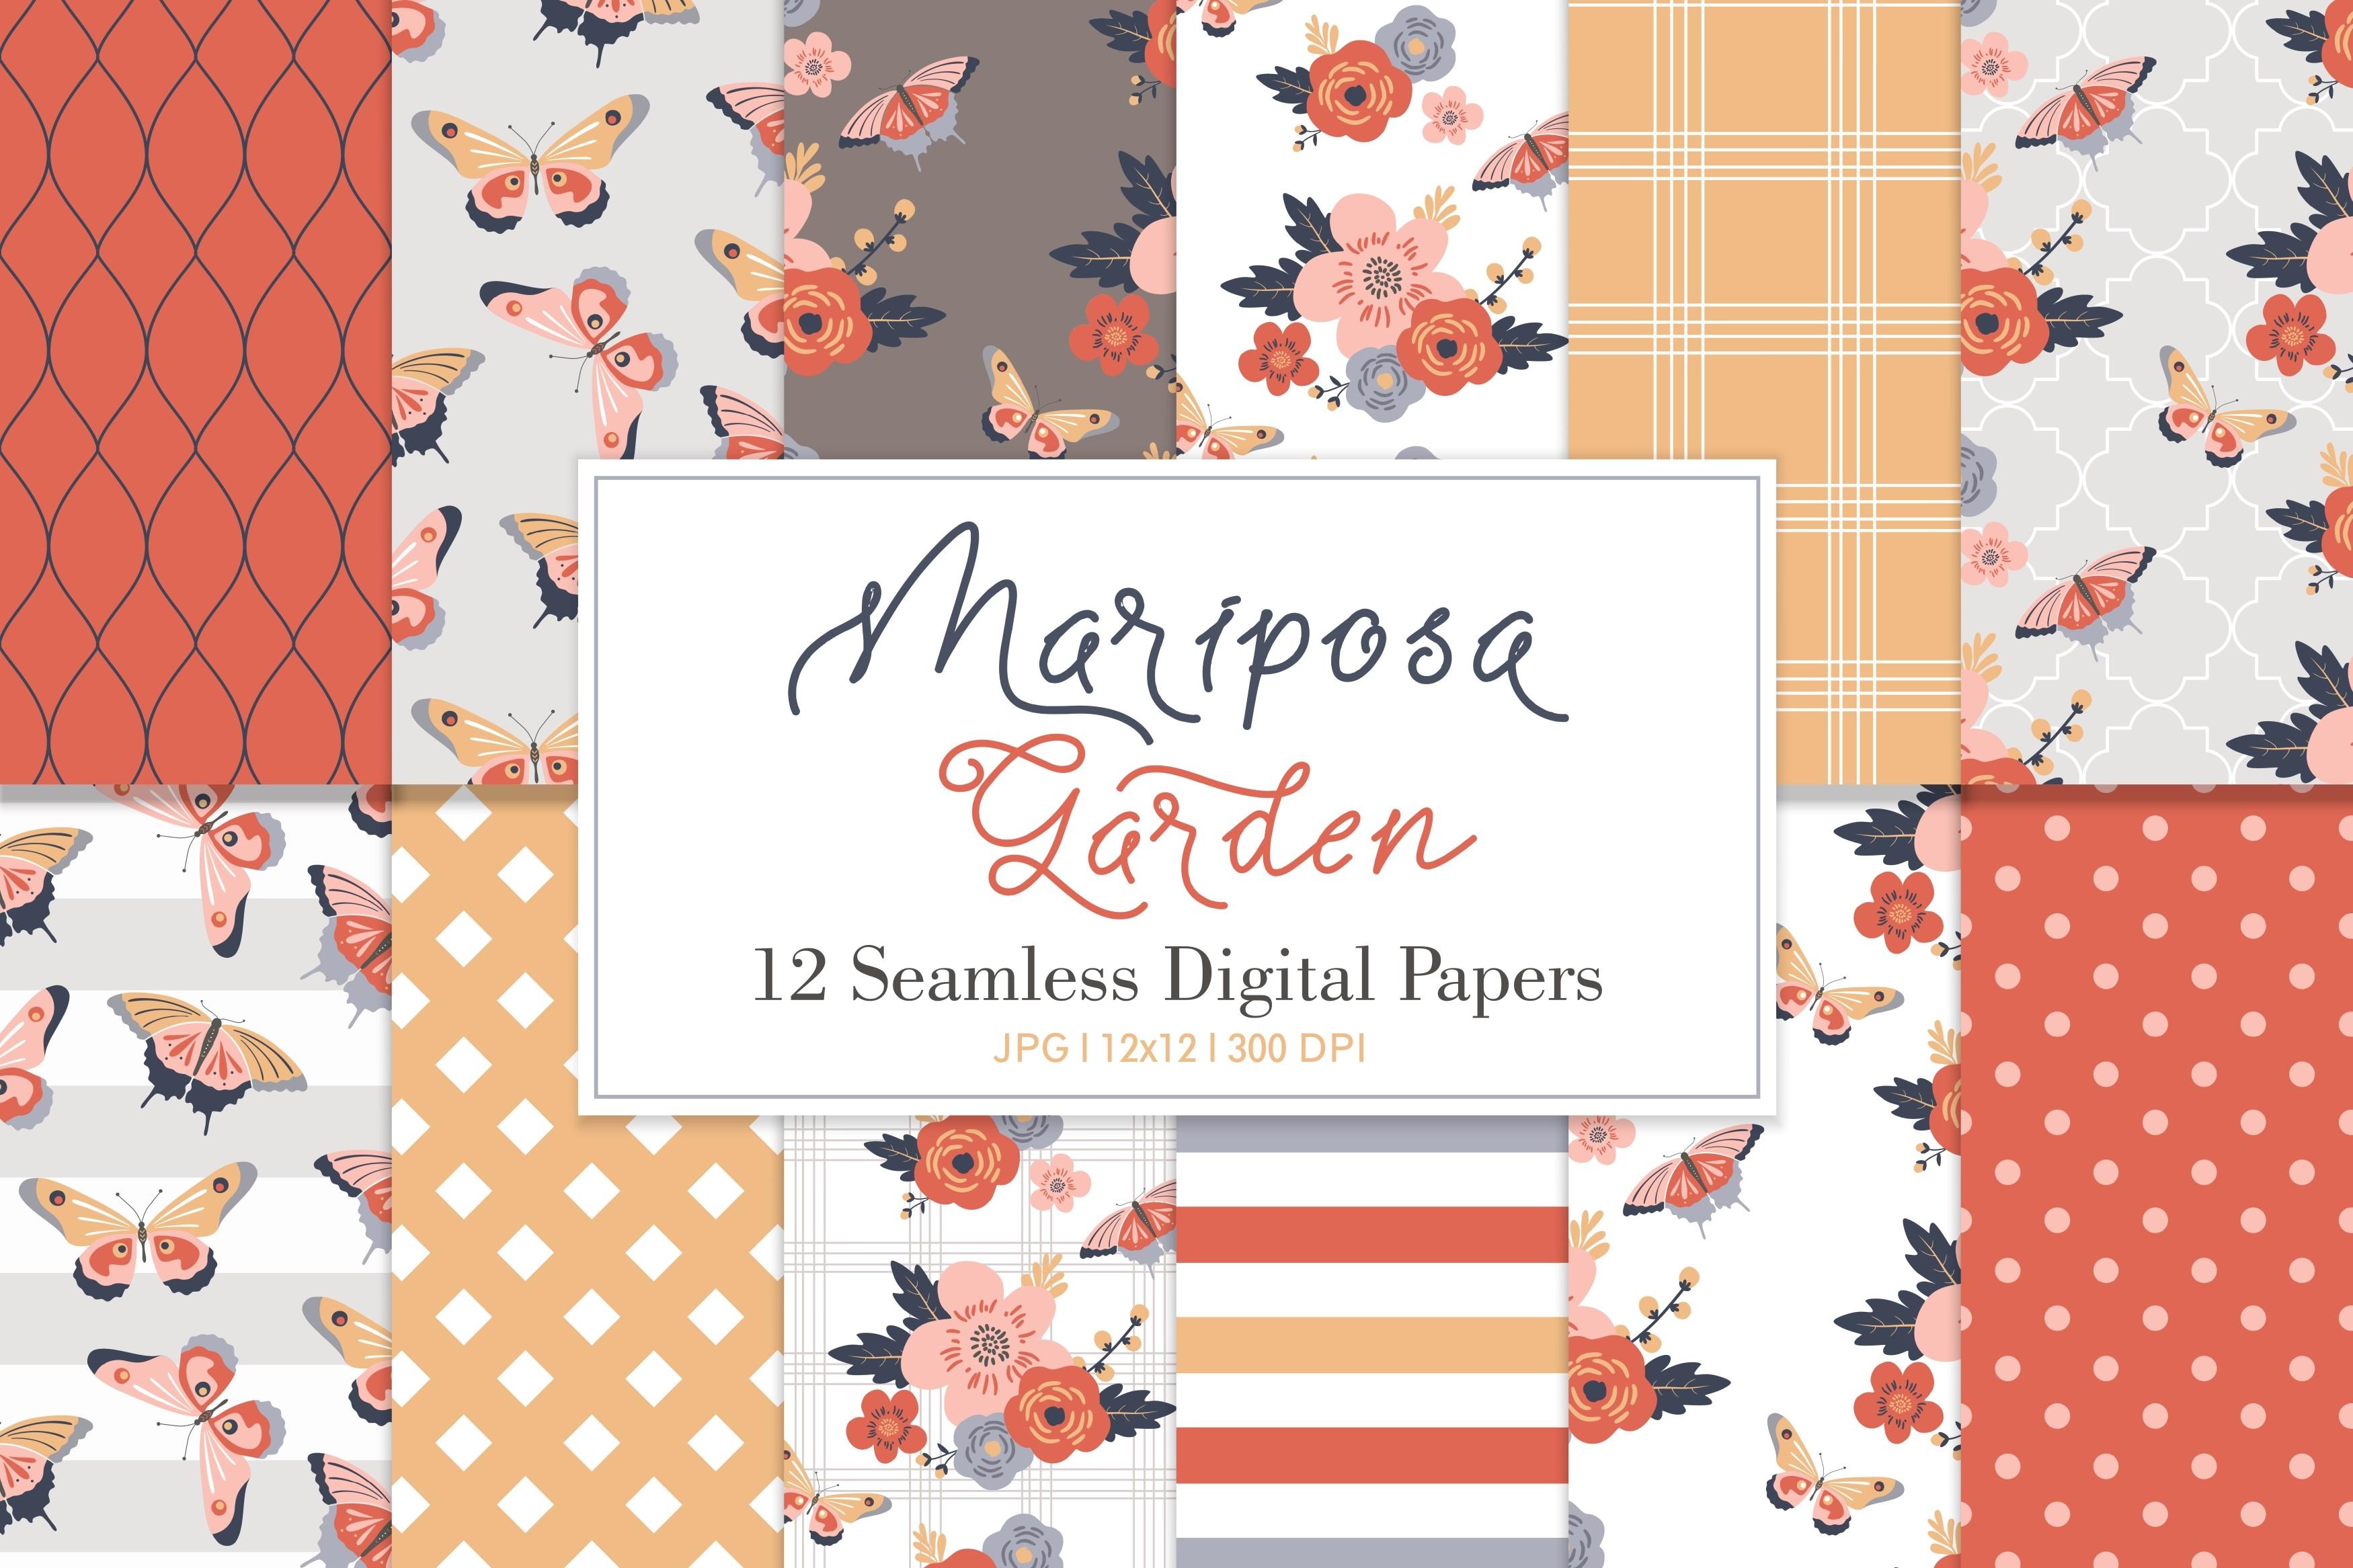 Digital Paper Pack Mariposa Garden